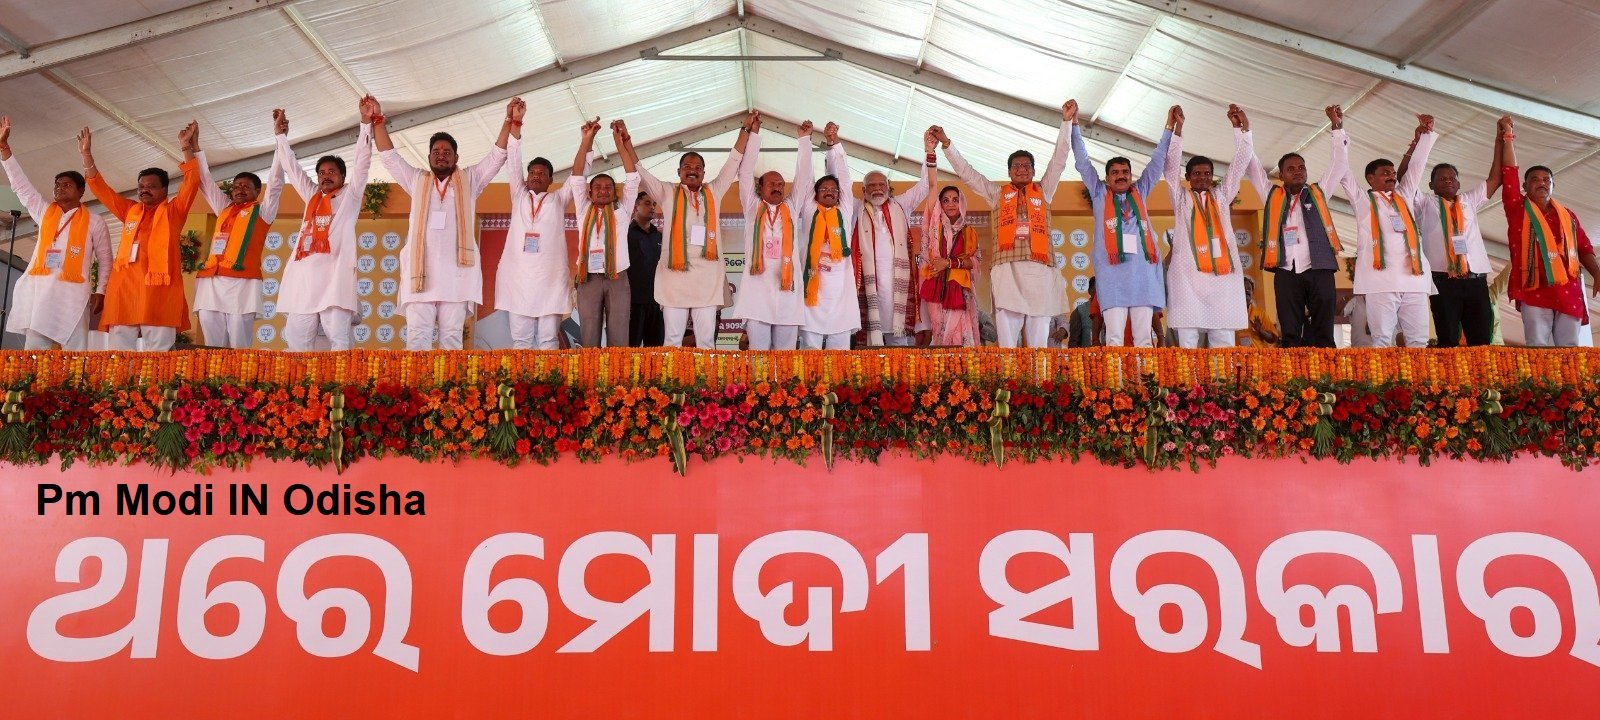 PM Modi In Odisha:पीएम मोदी ने ओडिशा के बेरहामपुर और नबरंगपुर में सार्वजनिक सभाओं को संबोधित किया